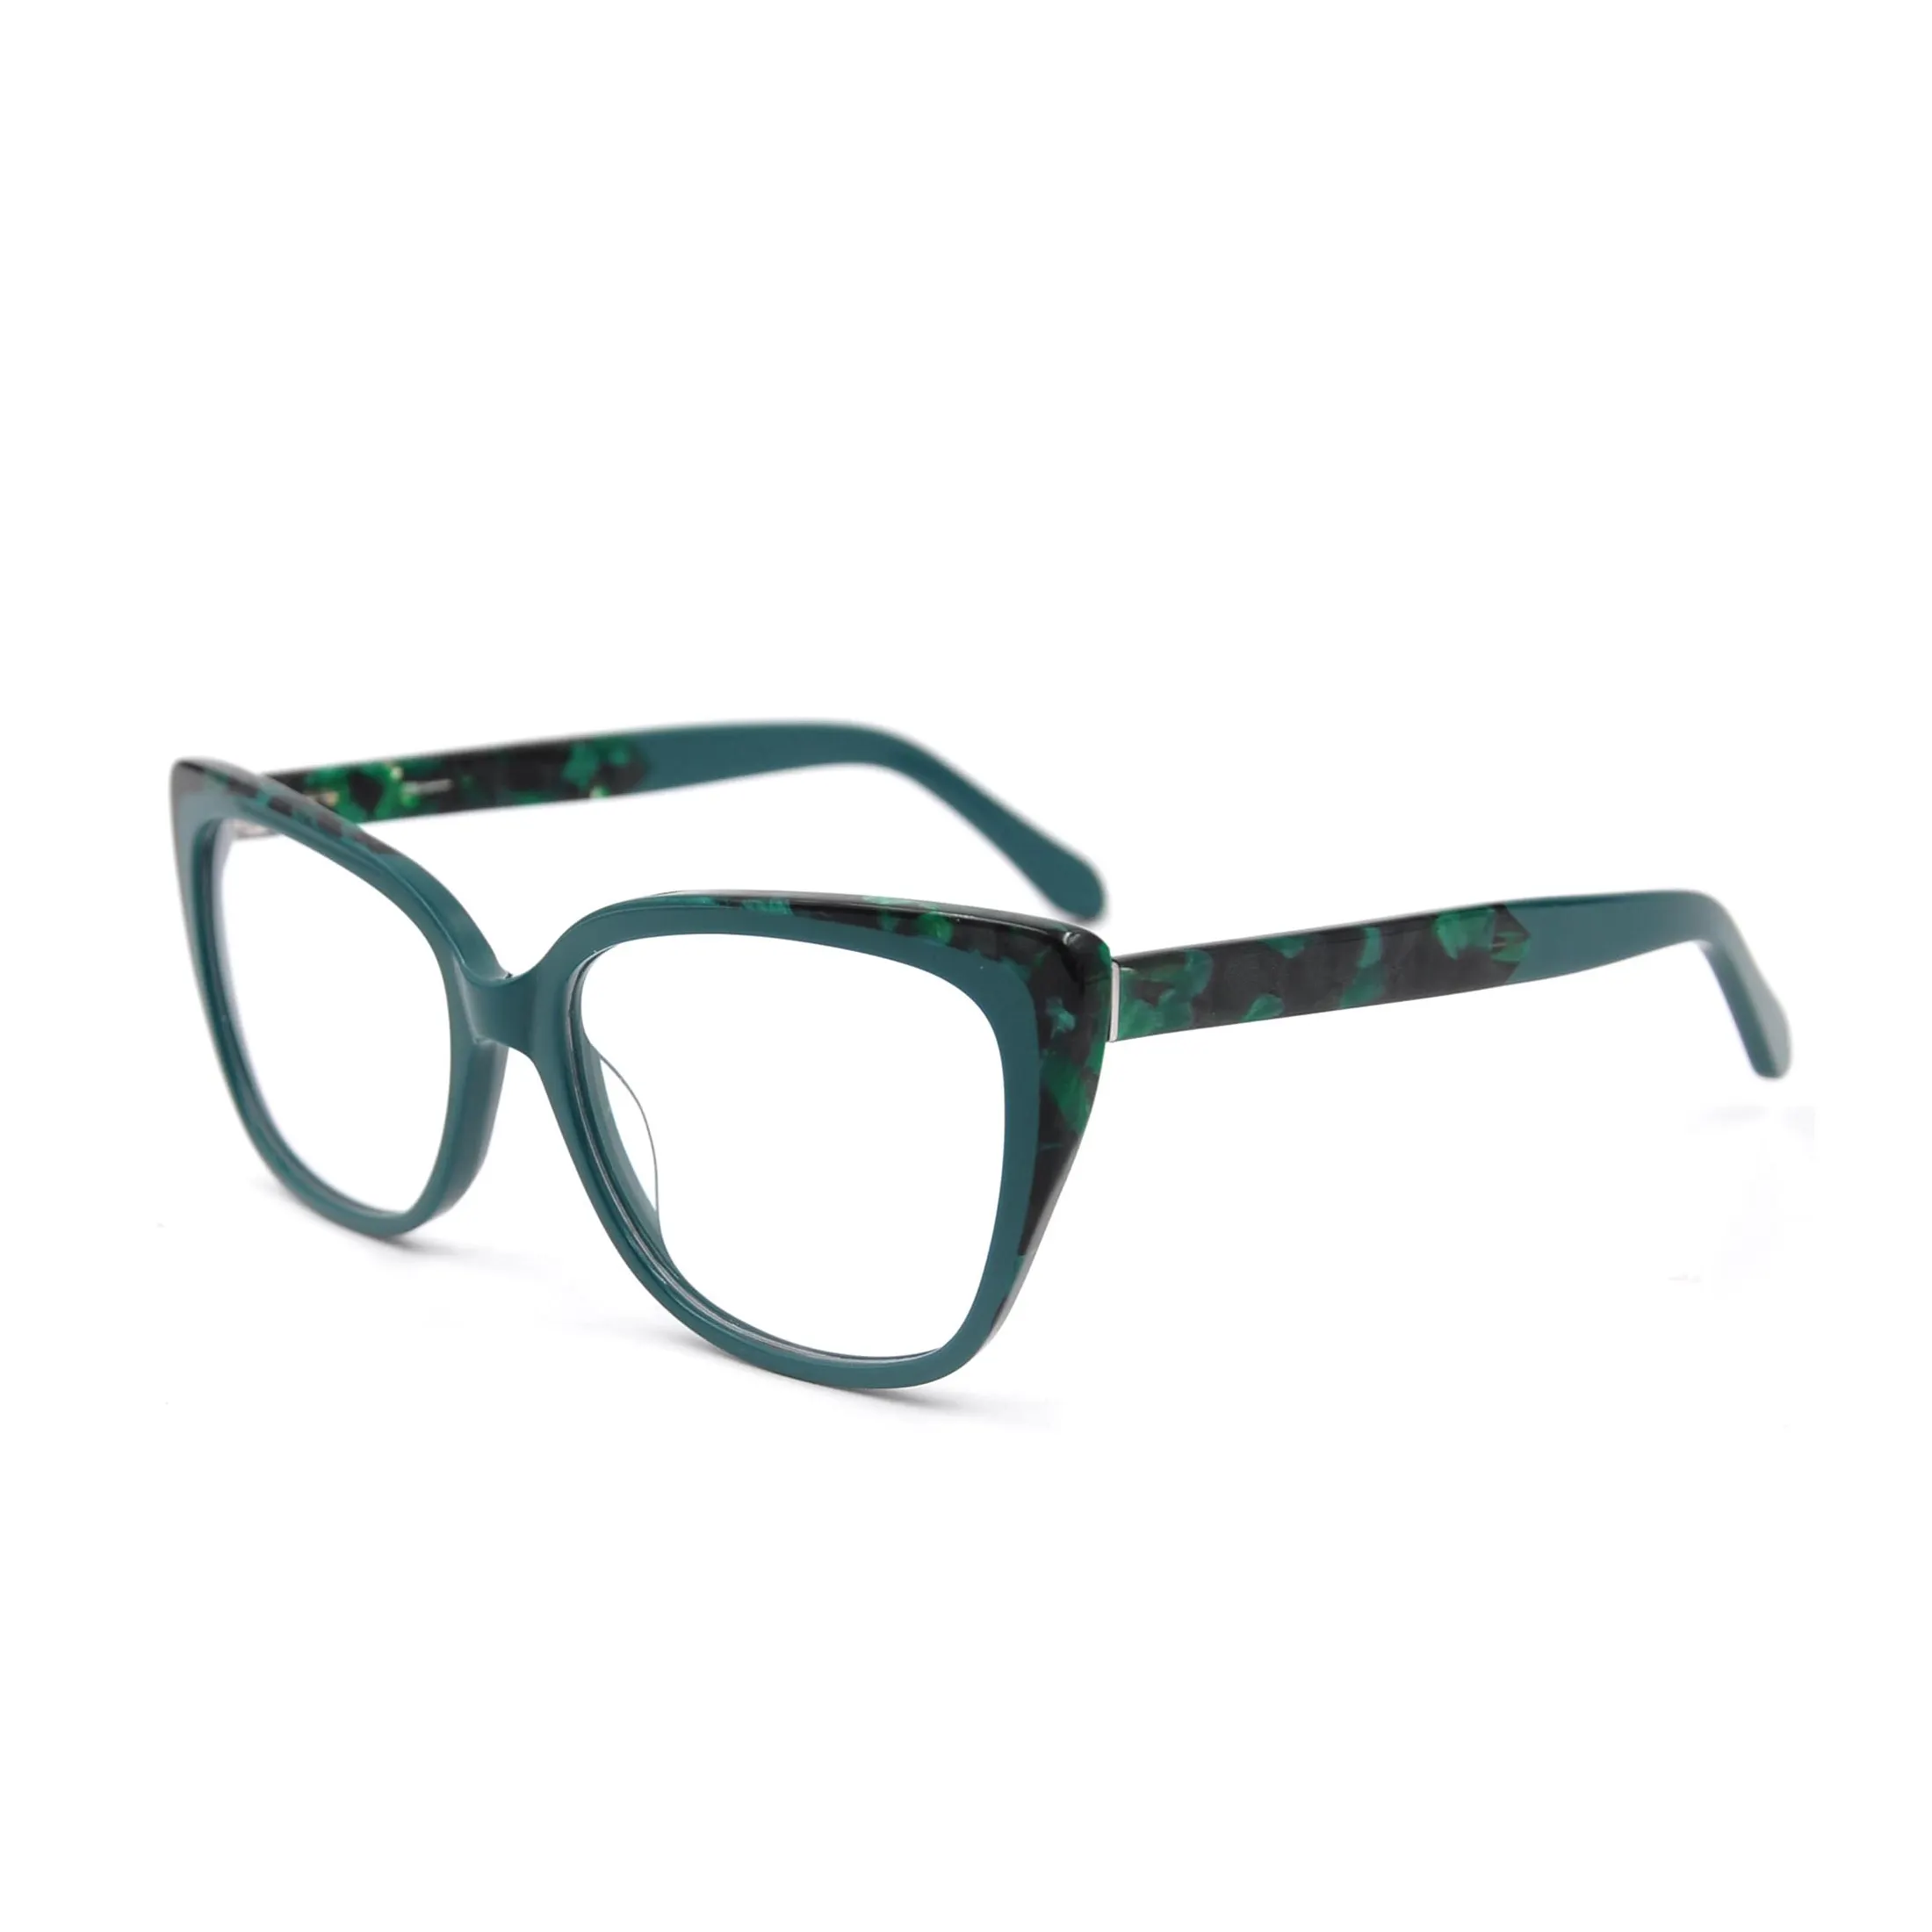 fashion eyeglasses newest 2020 cat eye big frame tortoiseshell acetate eyewear optical frame